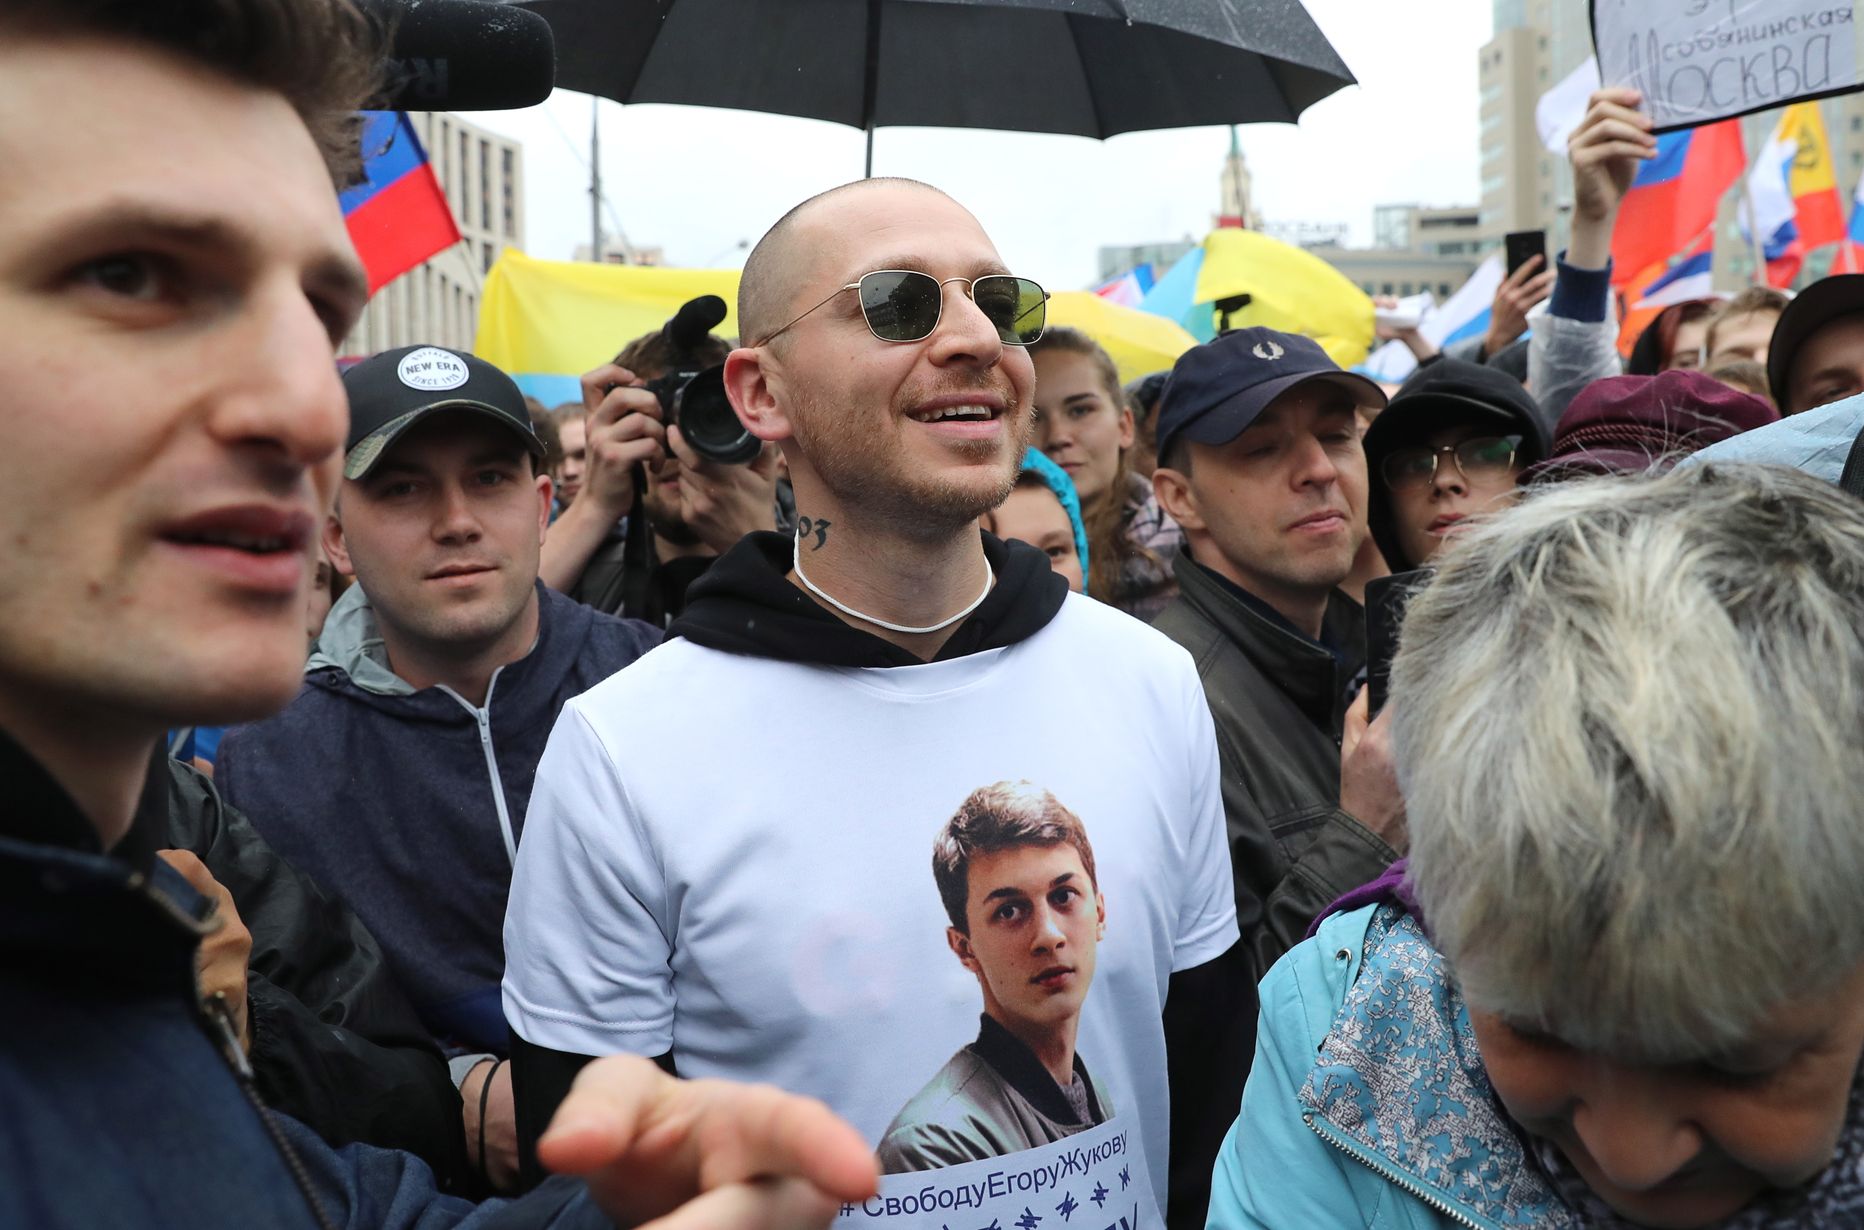 Venemaa räppar Oxxxymiron 2019. aasta suvel Moskvas meelevaldusel kohalikelt valimistelt kõrvaldatud opositsioonikandidaatide toetuseks.